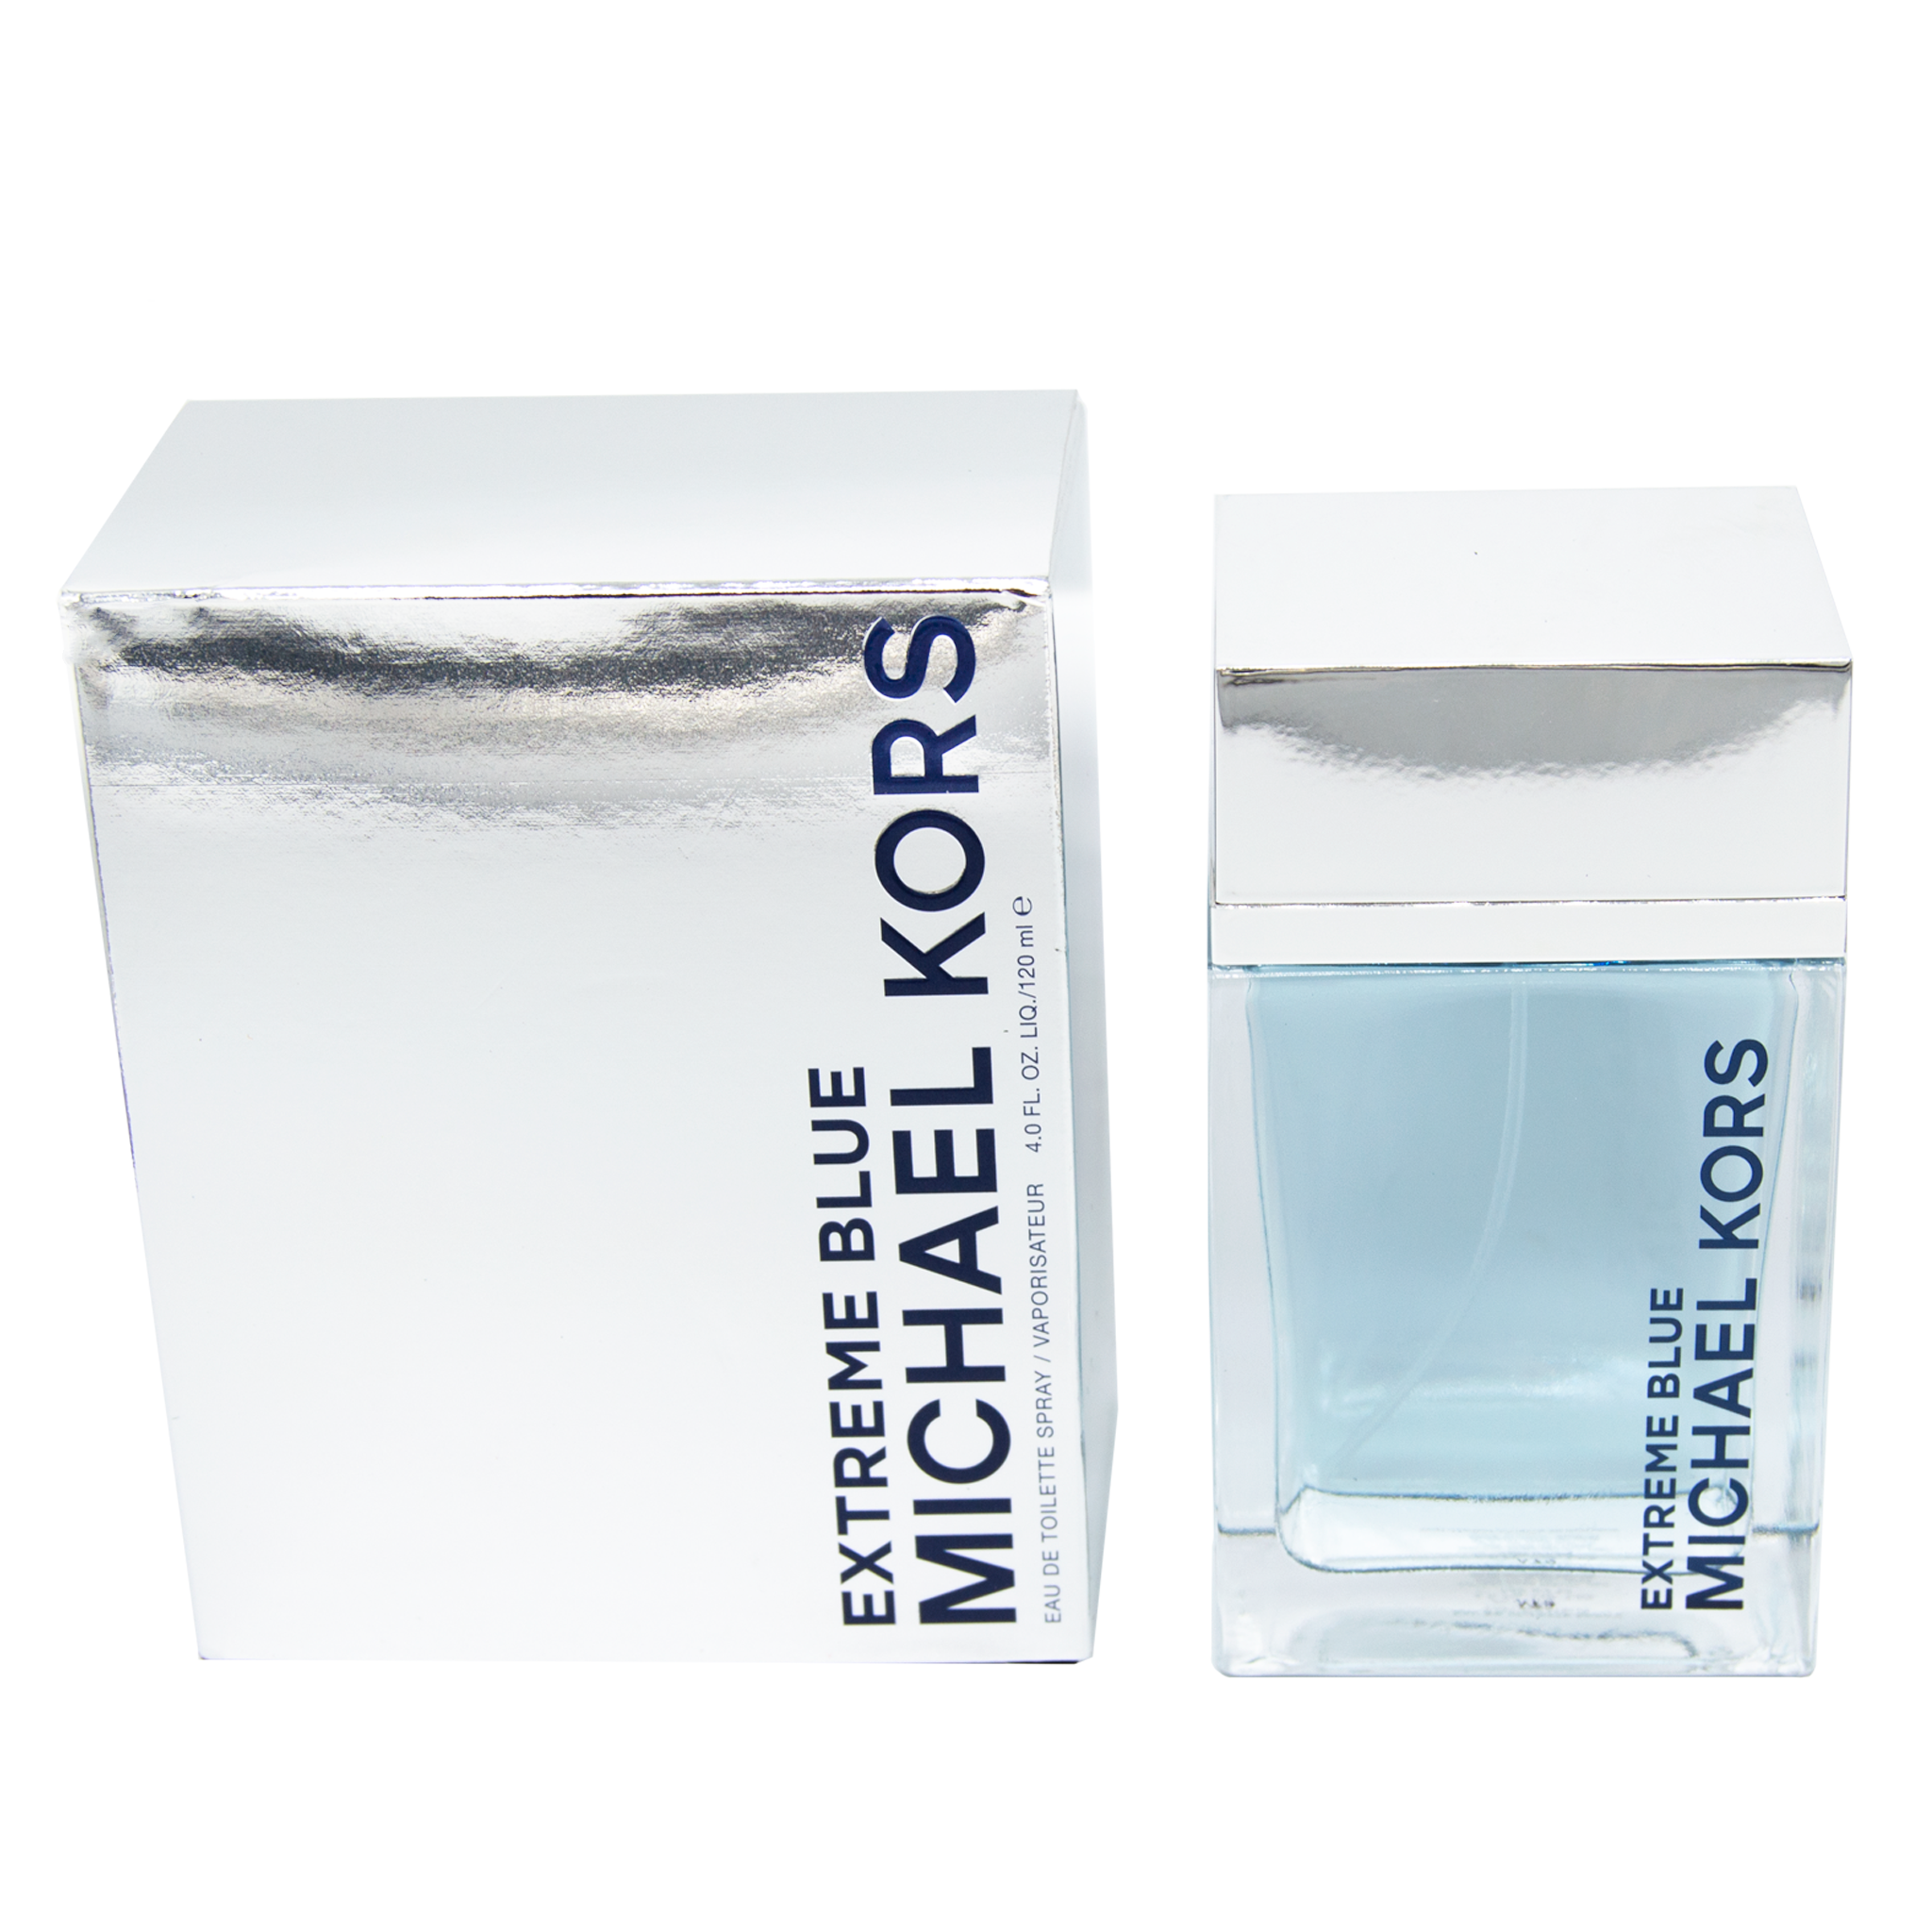 Michael Kors for Men Extreme Blue Eau de Toilette Spray, 4 oz